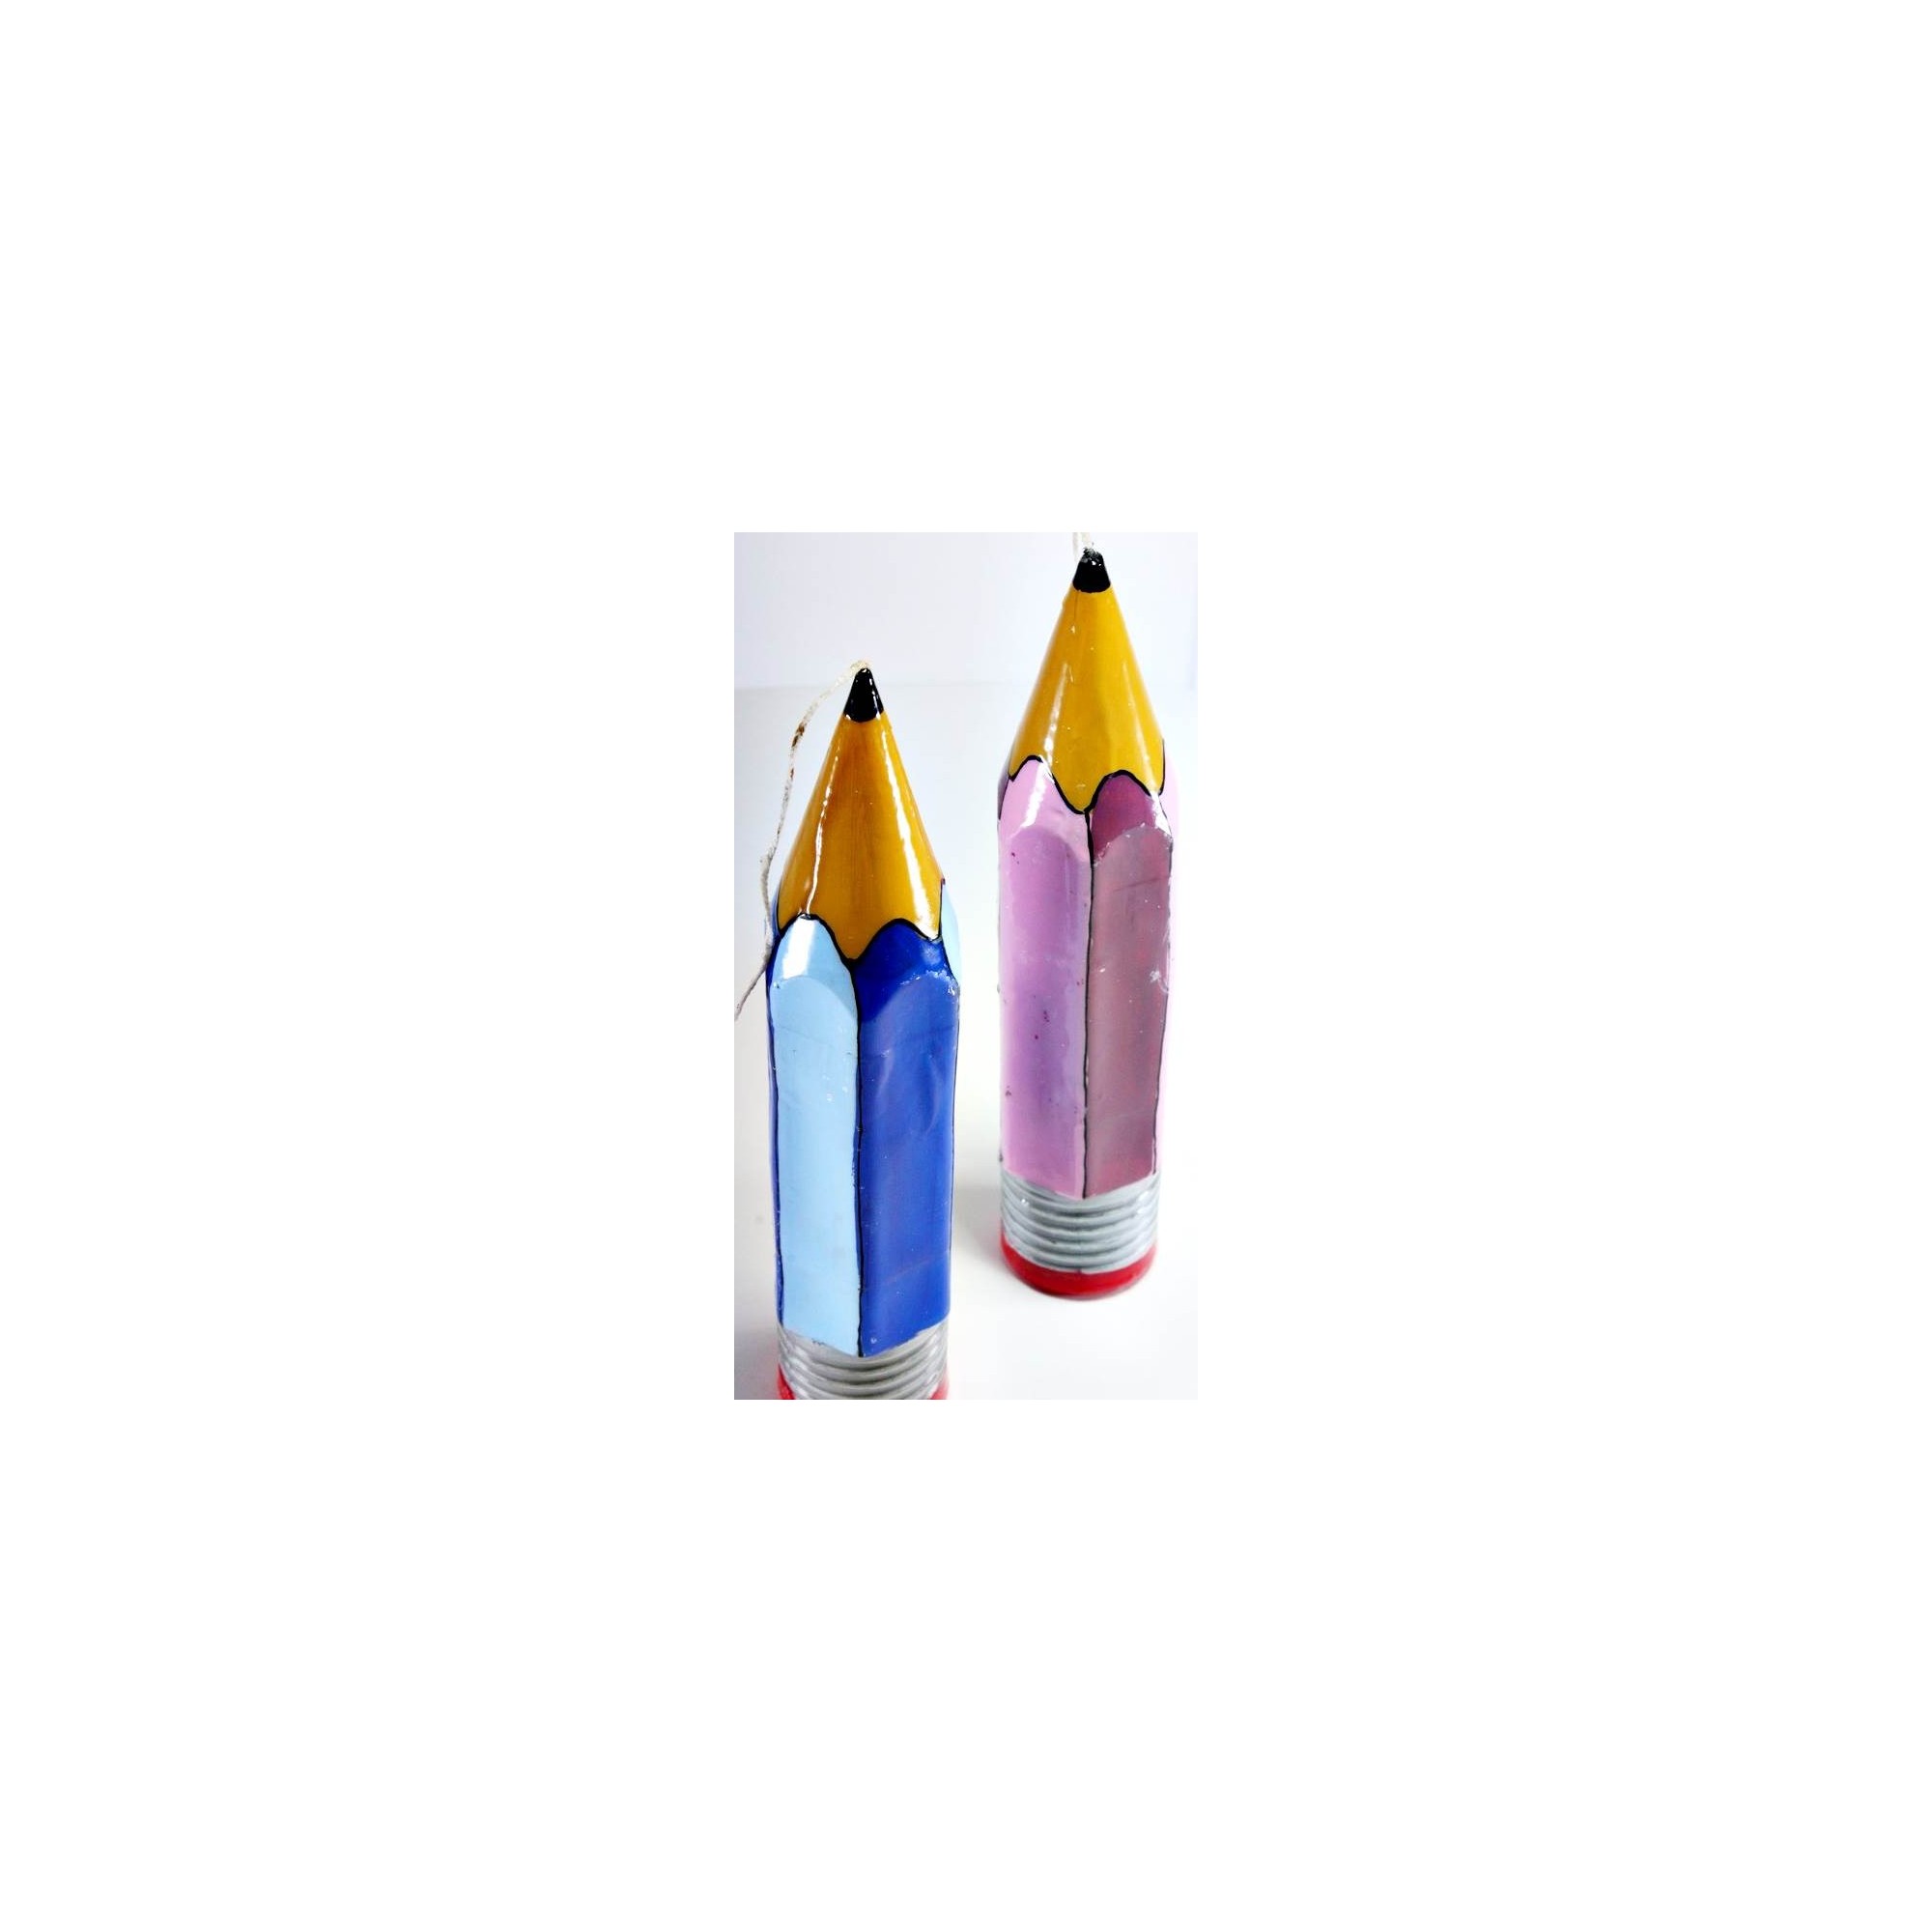 Λαμπάδα μολύβι - G1903